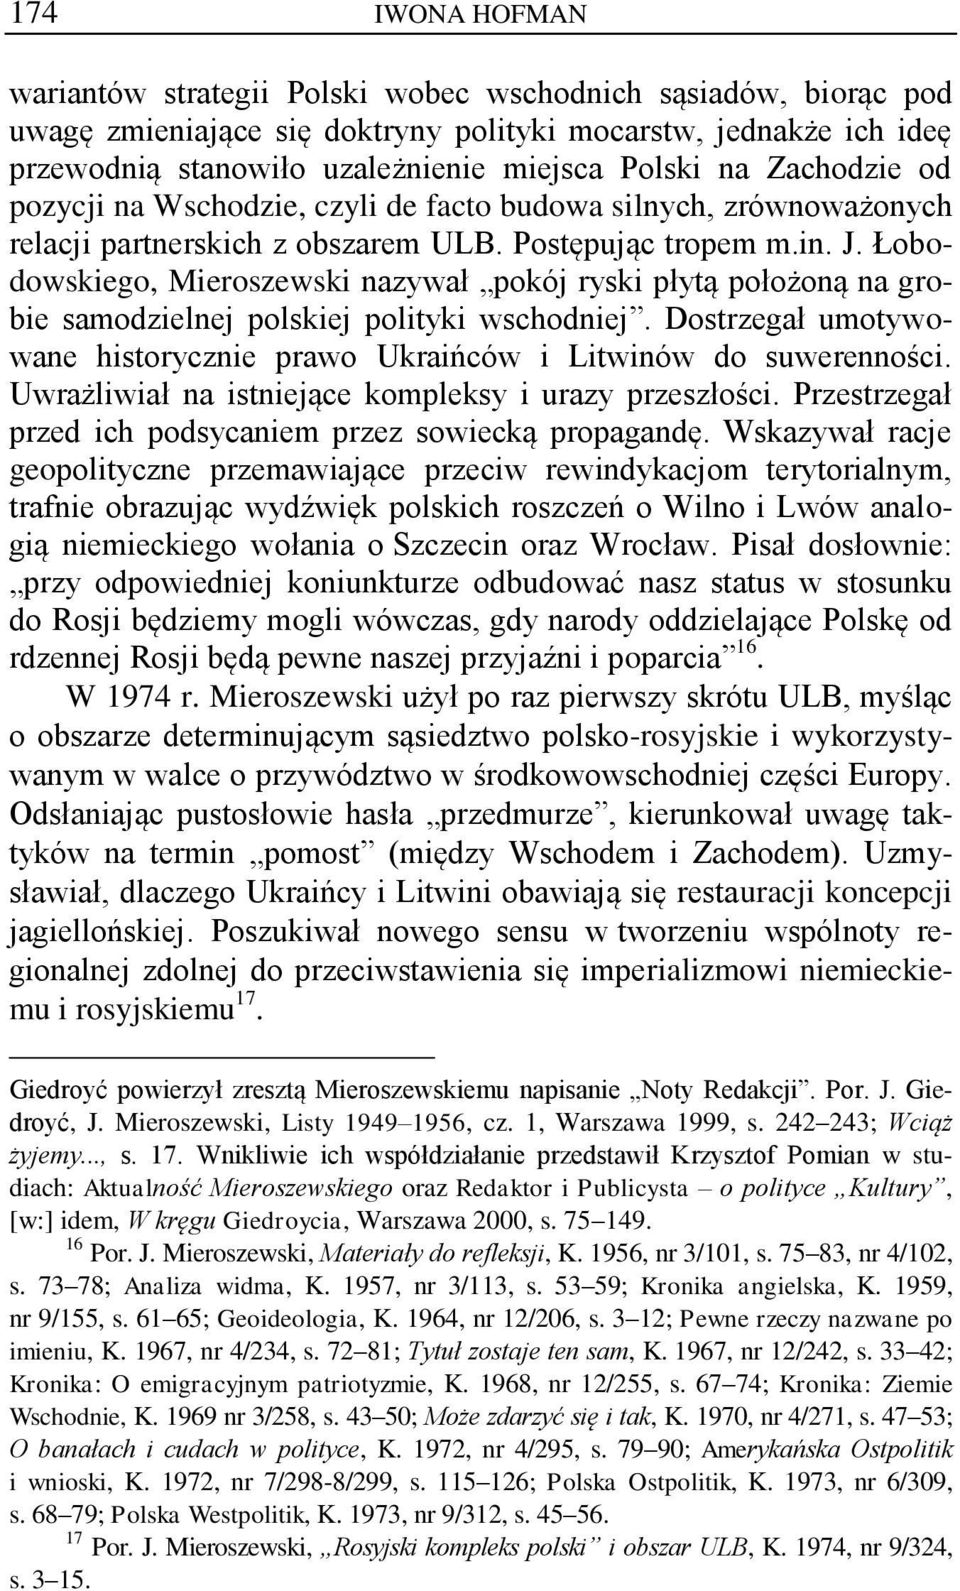 Łobodowskiego, Mieroszewski nazywał pokój ryski płytą położoną na grobie samodzielnej polskiej polityki wschodniej. Dostrzegał umotywowane historycznie prawo Ukraińców i Litwinów do suwerenności.